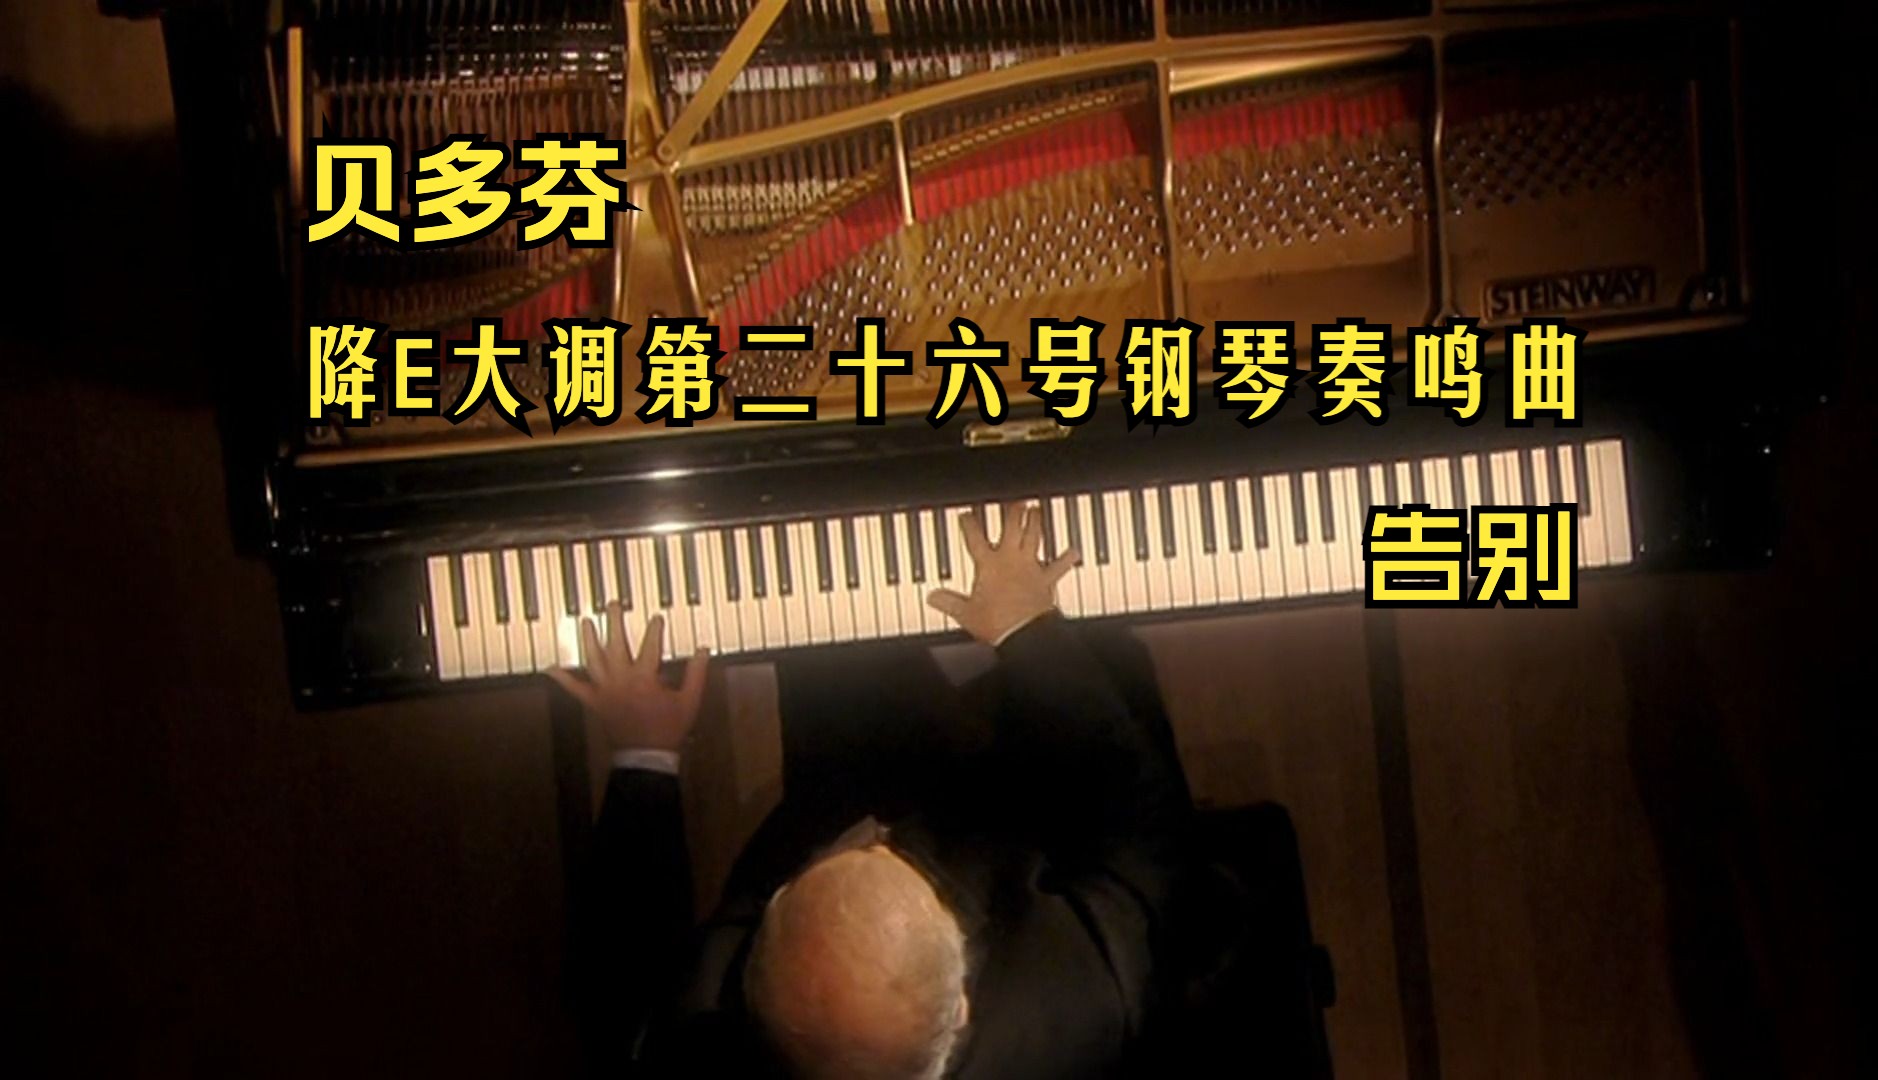 【贝多芬】降E大调第二十六号钢琴奏鸣曲「告别」 Op. 81a (巴伦博伊姆演奏)